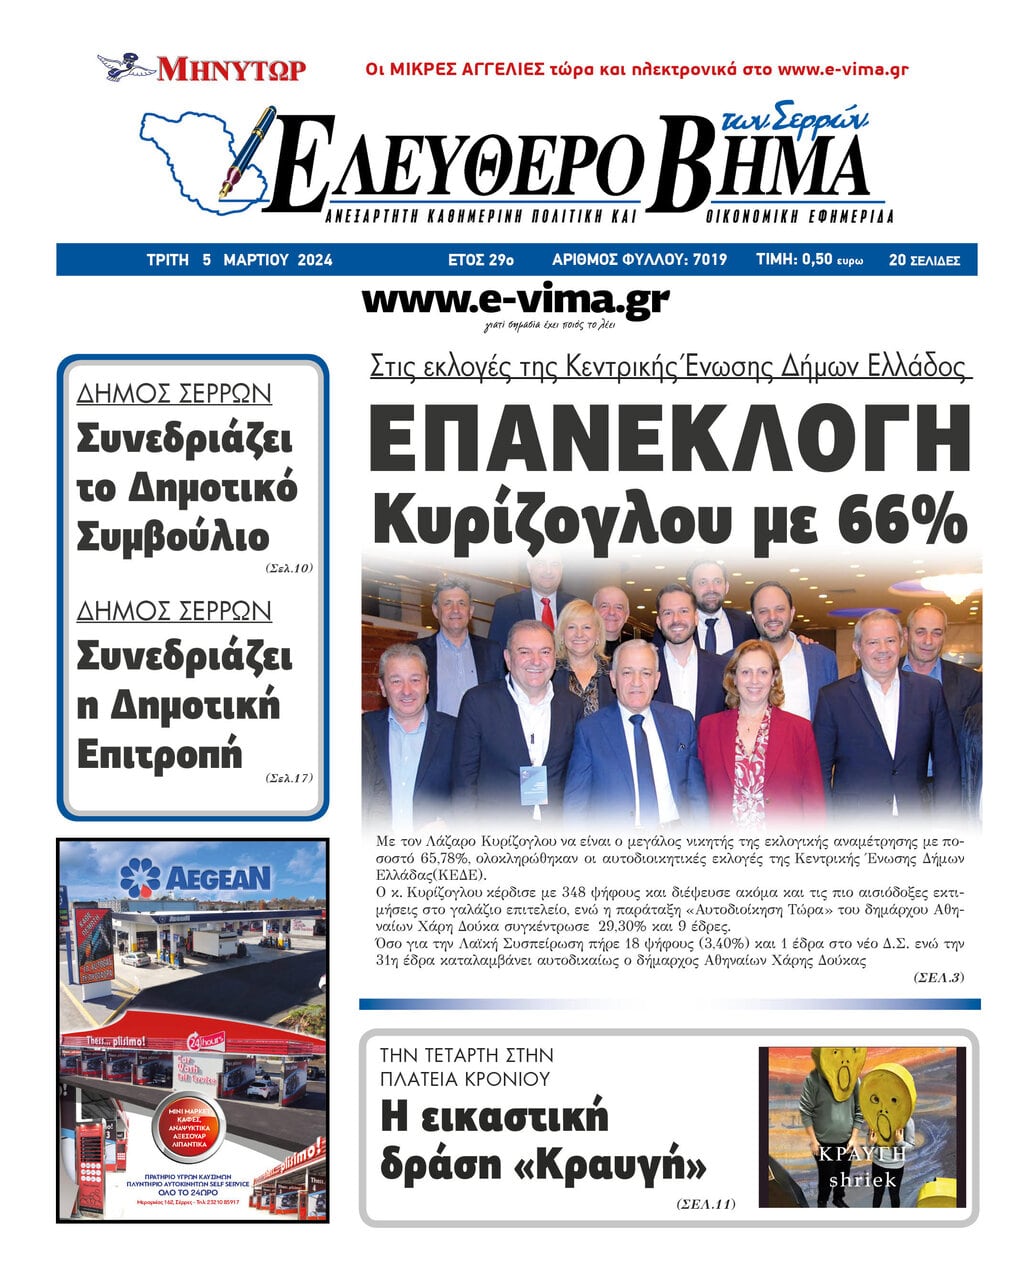 Επανεκλογή Κυρίζογλου με 66 στις εκλογές της Κεντρικής Ένωσης Δήμων Ελλάδος ΚΕΔΕ